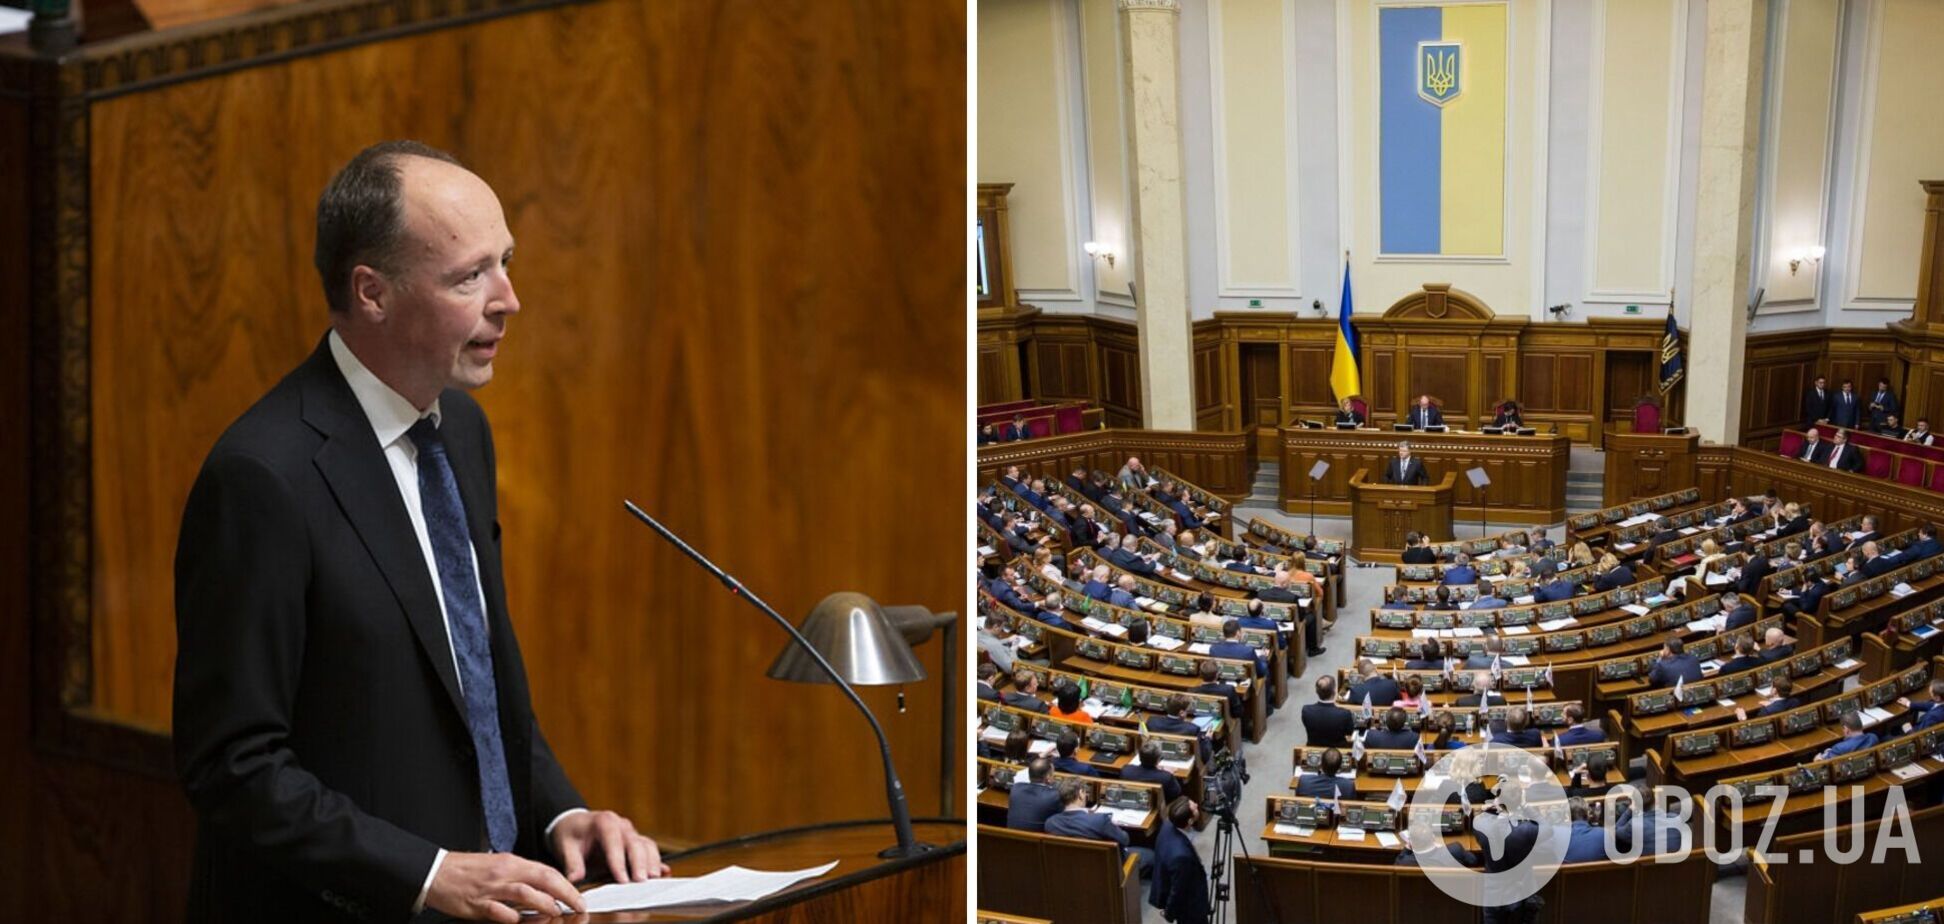 Спікер парламенту Фінляндії виступив у Верховній Раді українською: нардепи аплодували стоячи. Відео